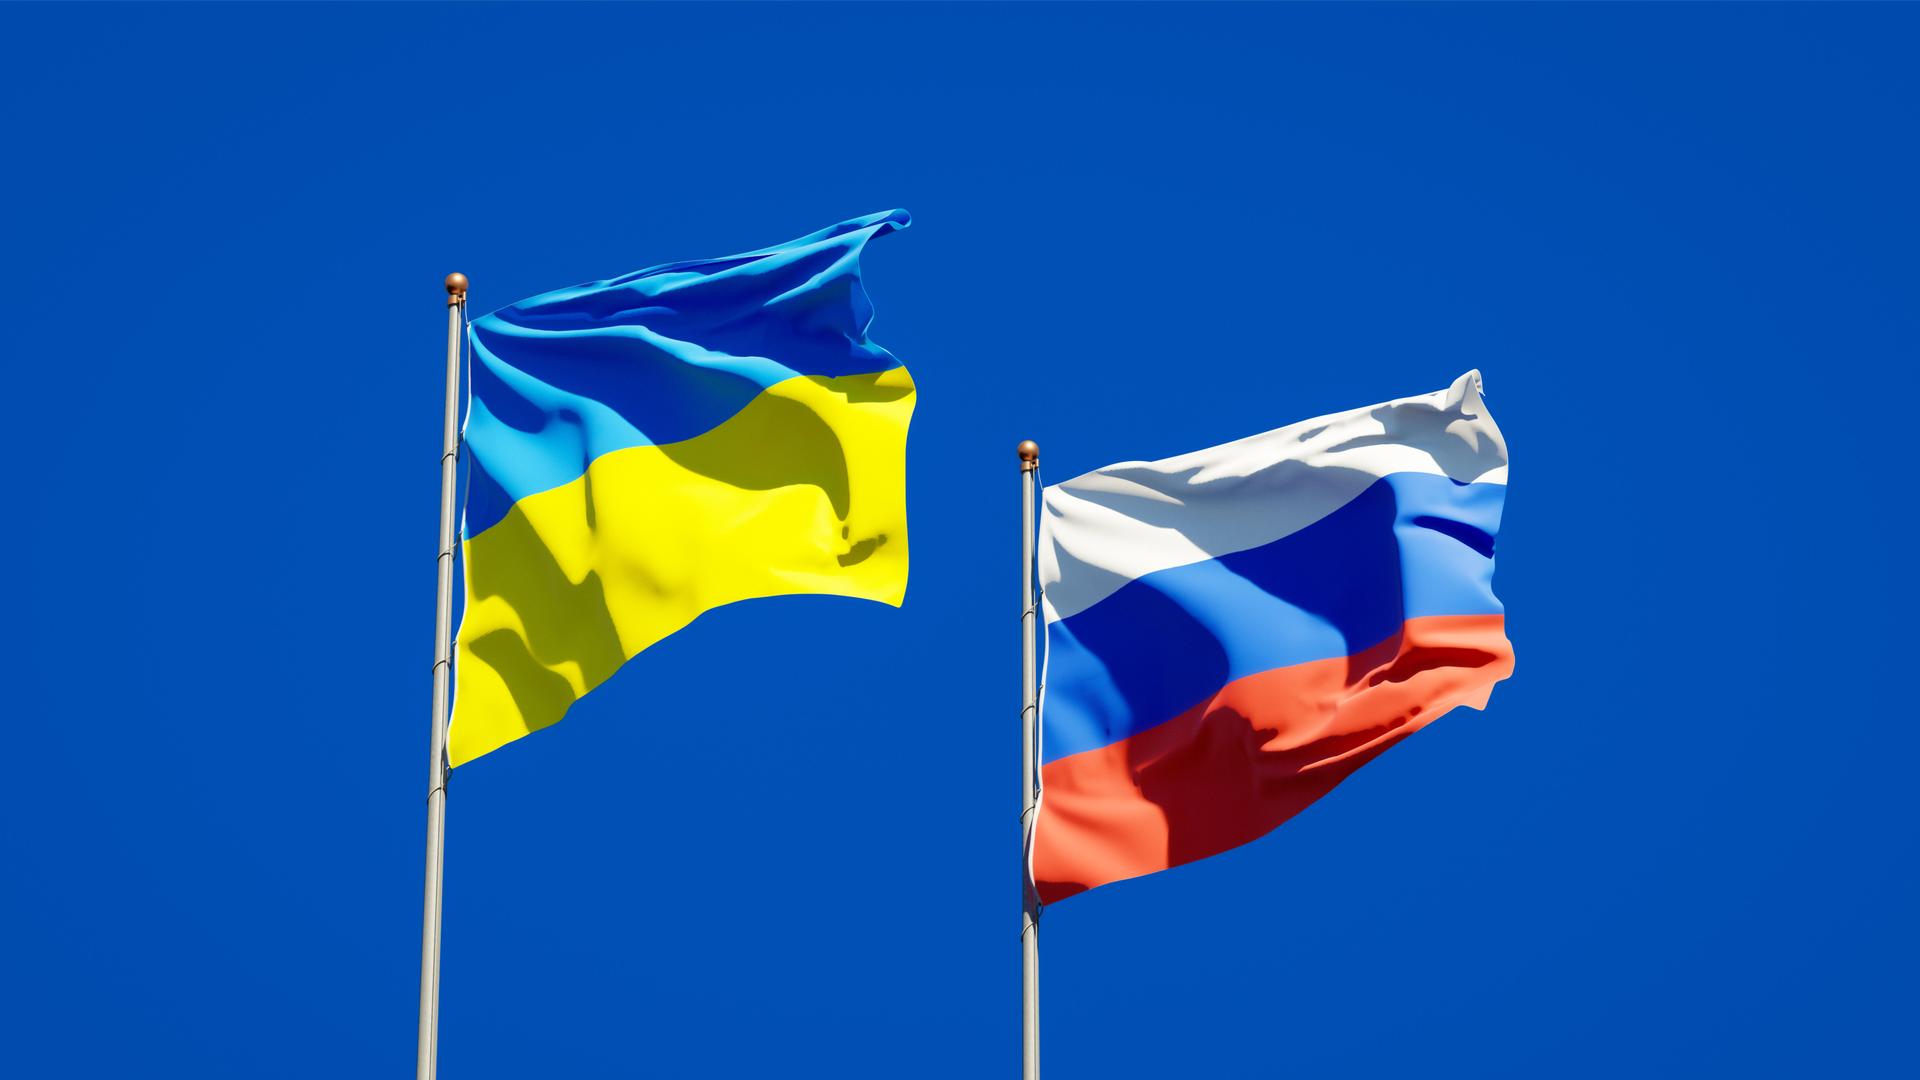 Die Flaggen von Russland und der Ukrainie wehen vor einem blauen Himmel.